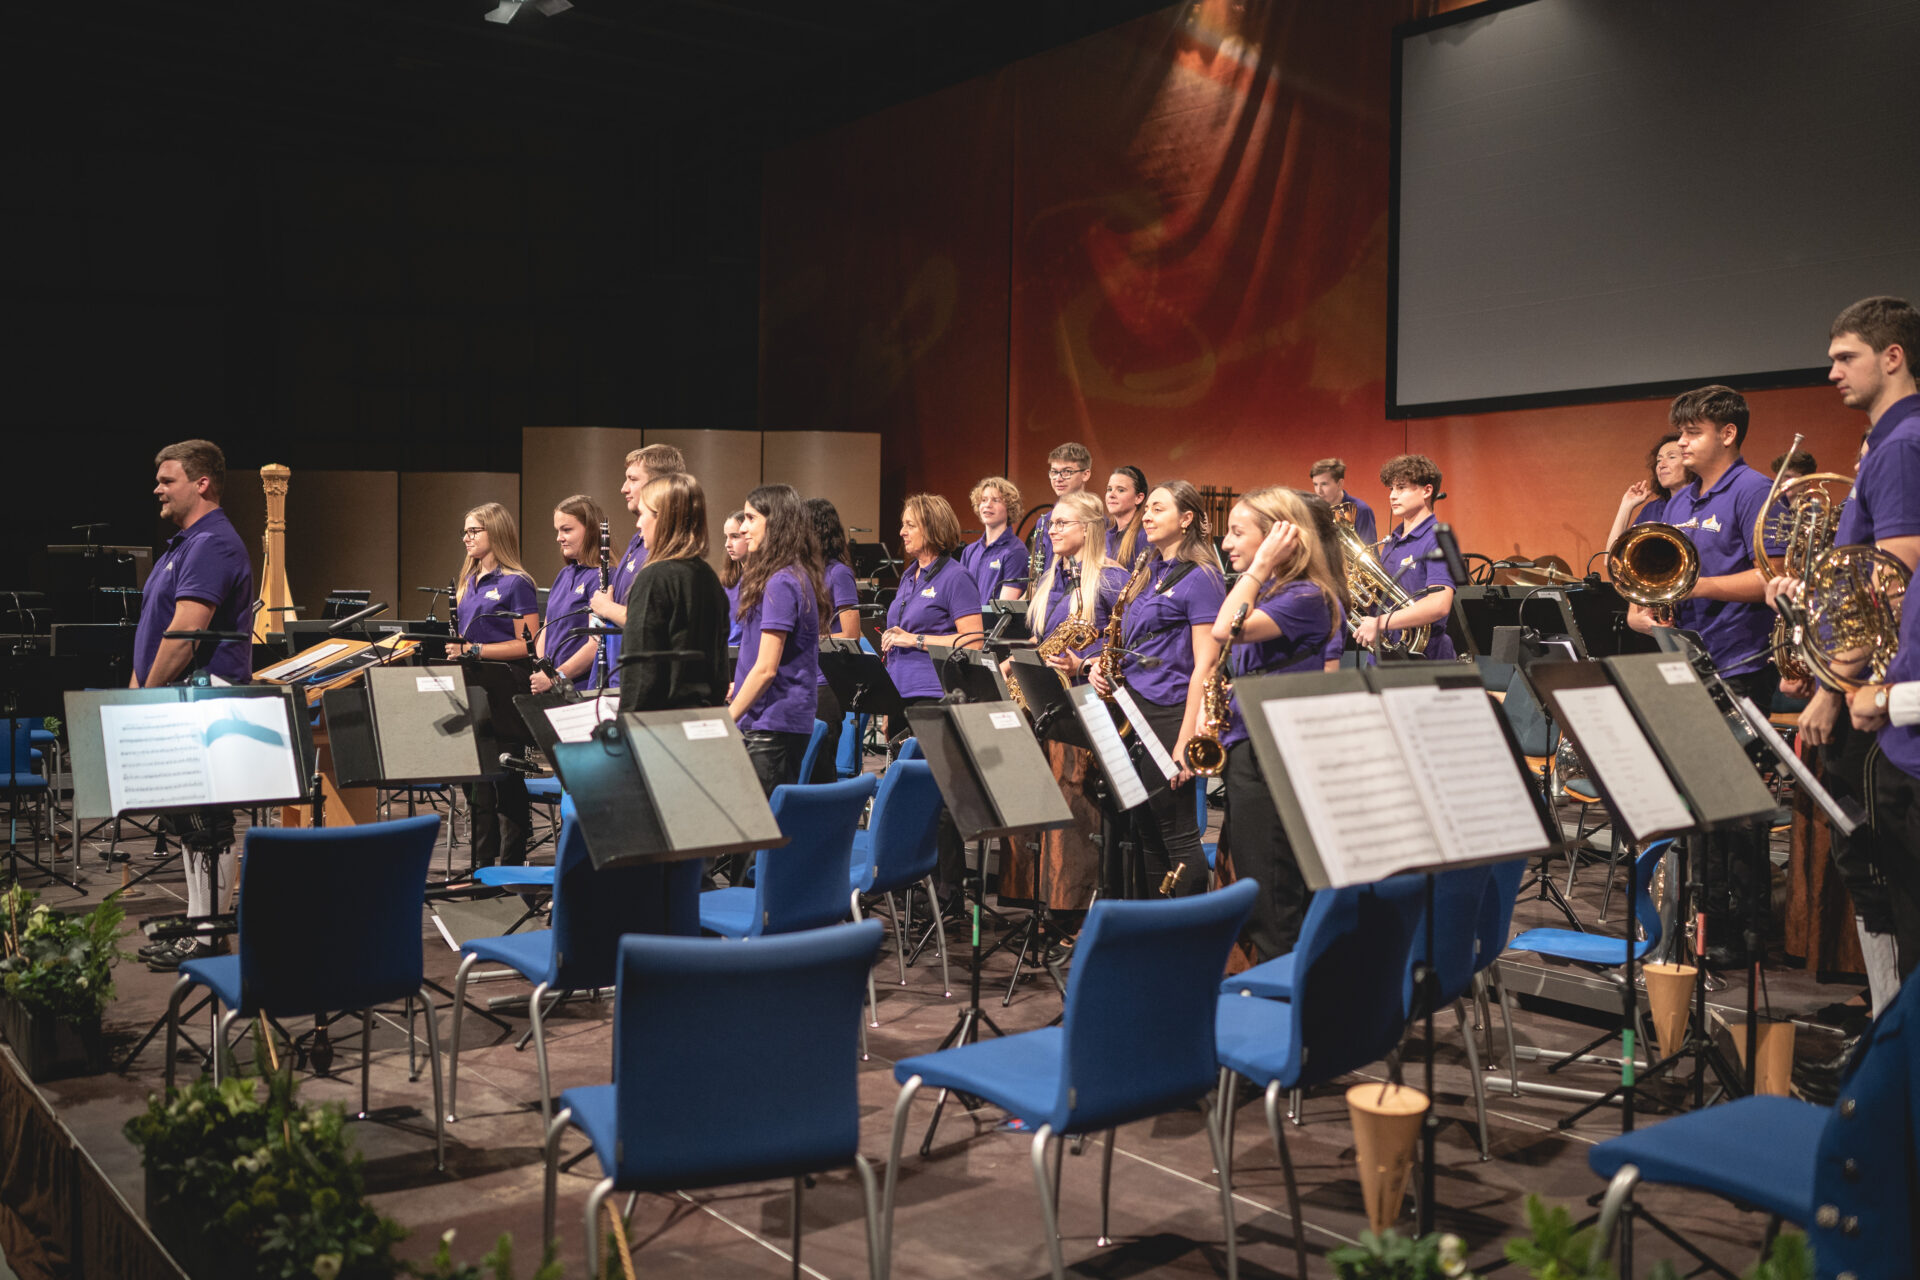 Eine Blasorchester der Stadtkapelle Leonding bereitet sich auf der Bühne auf einen Auftritt vor, wobei Musiker verschiedene Blas- und Schlaginstrumente in der Hand halten.